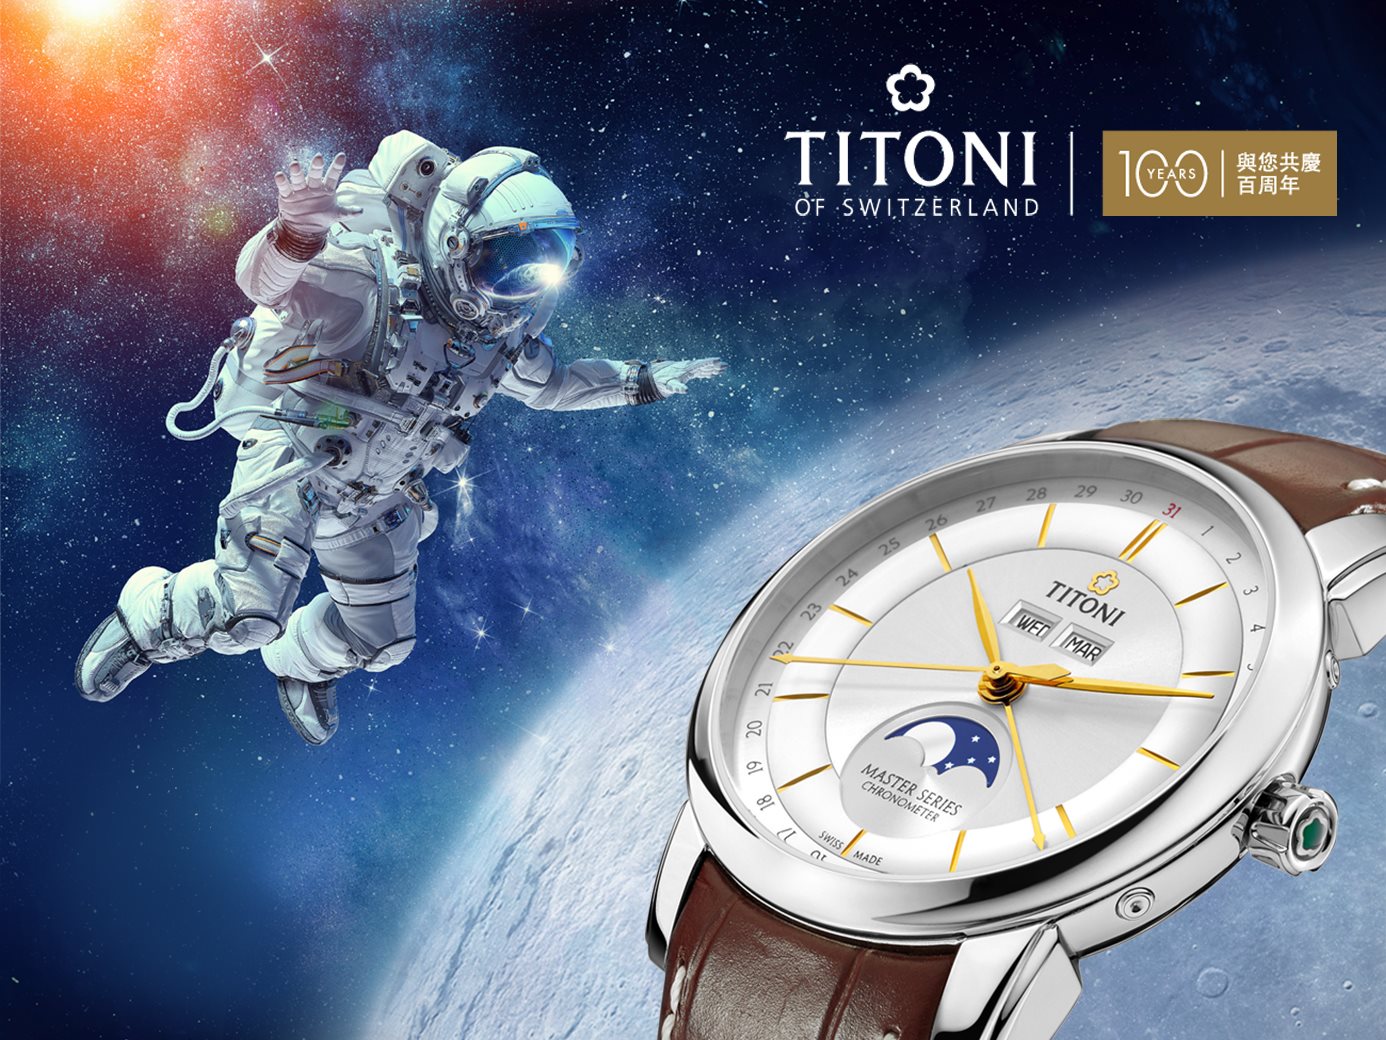 「百年瑞士機械錶專家TITONI 本年度高顏值、高CP值月相錶首選」